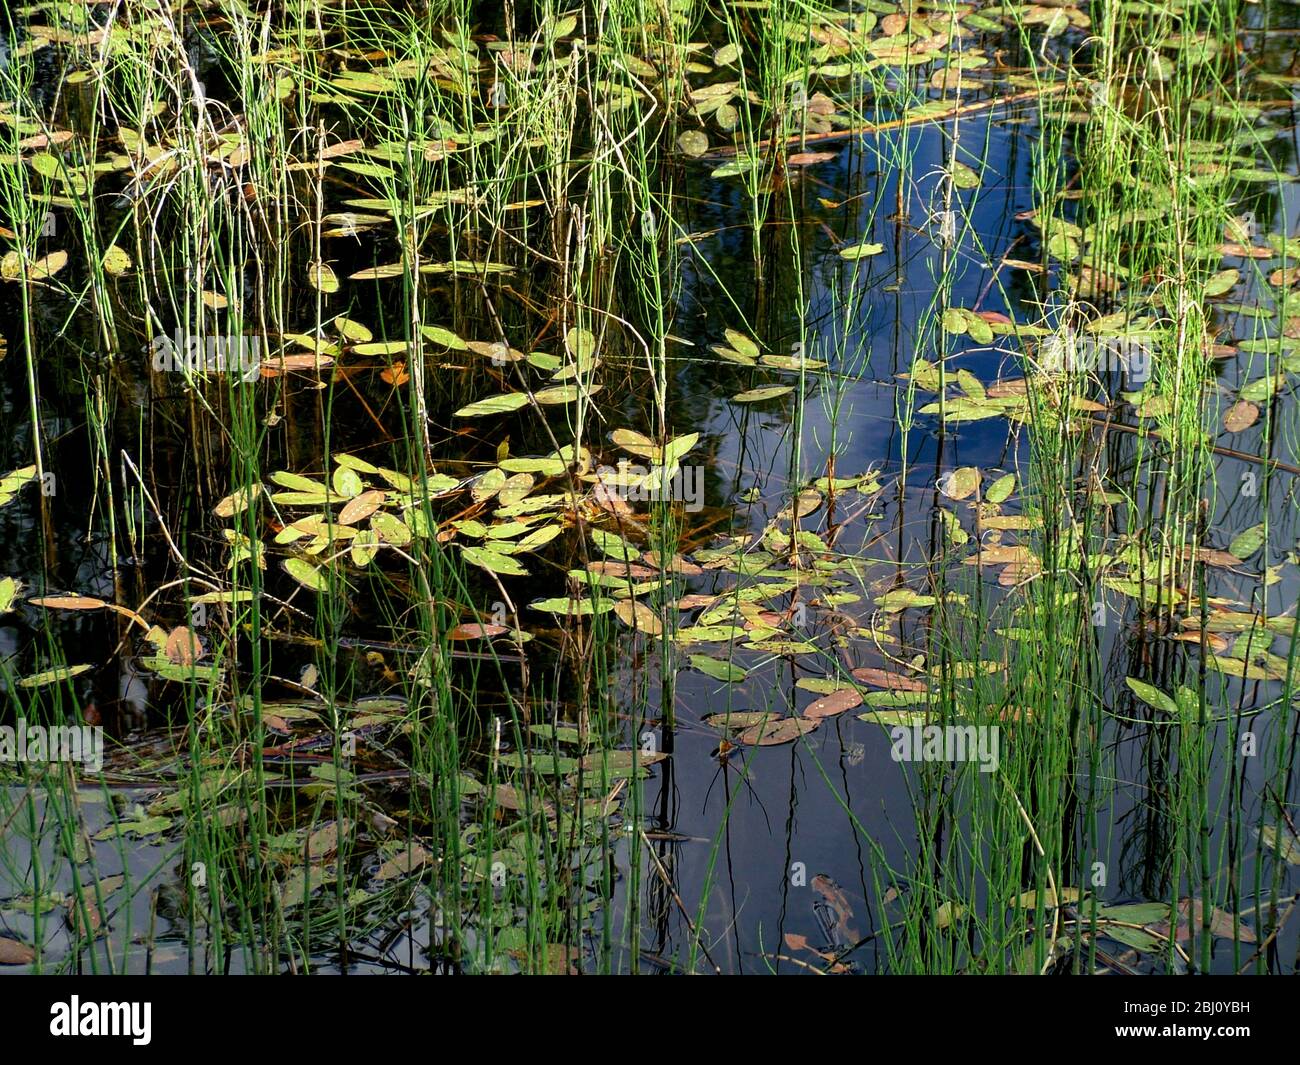 Teich mit Blättern schwimmend und Schilf in Oberfläche reflektiert - Stockfoto